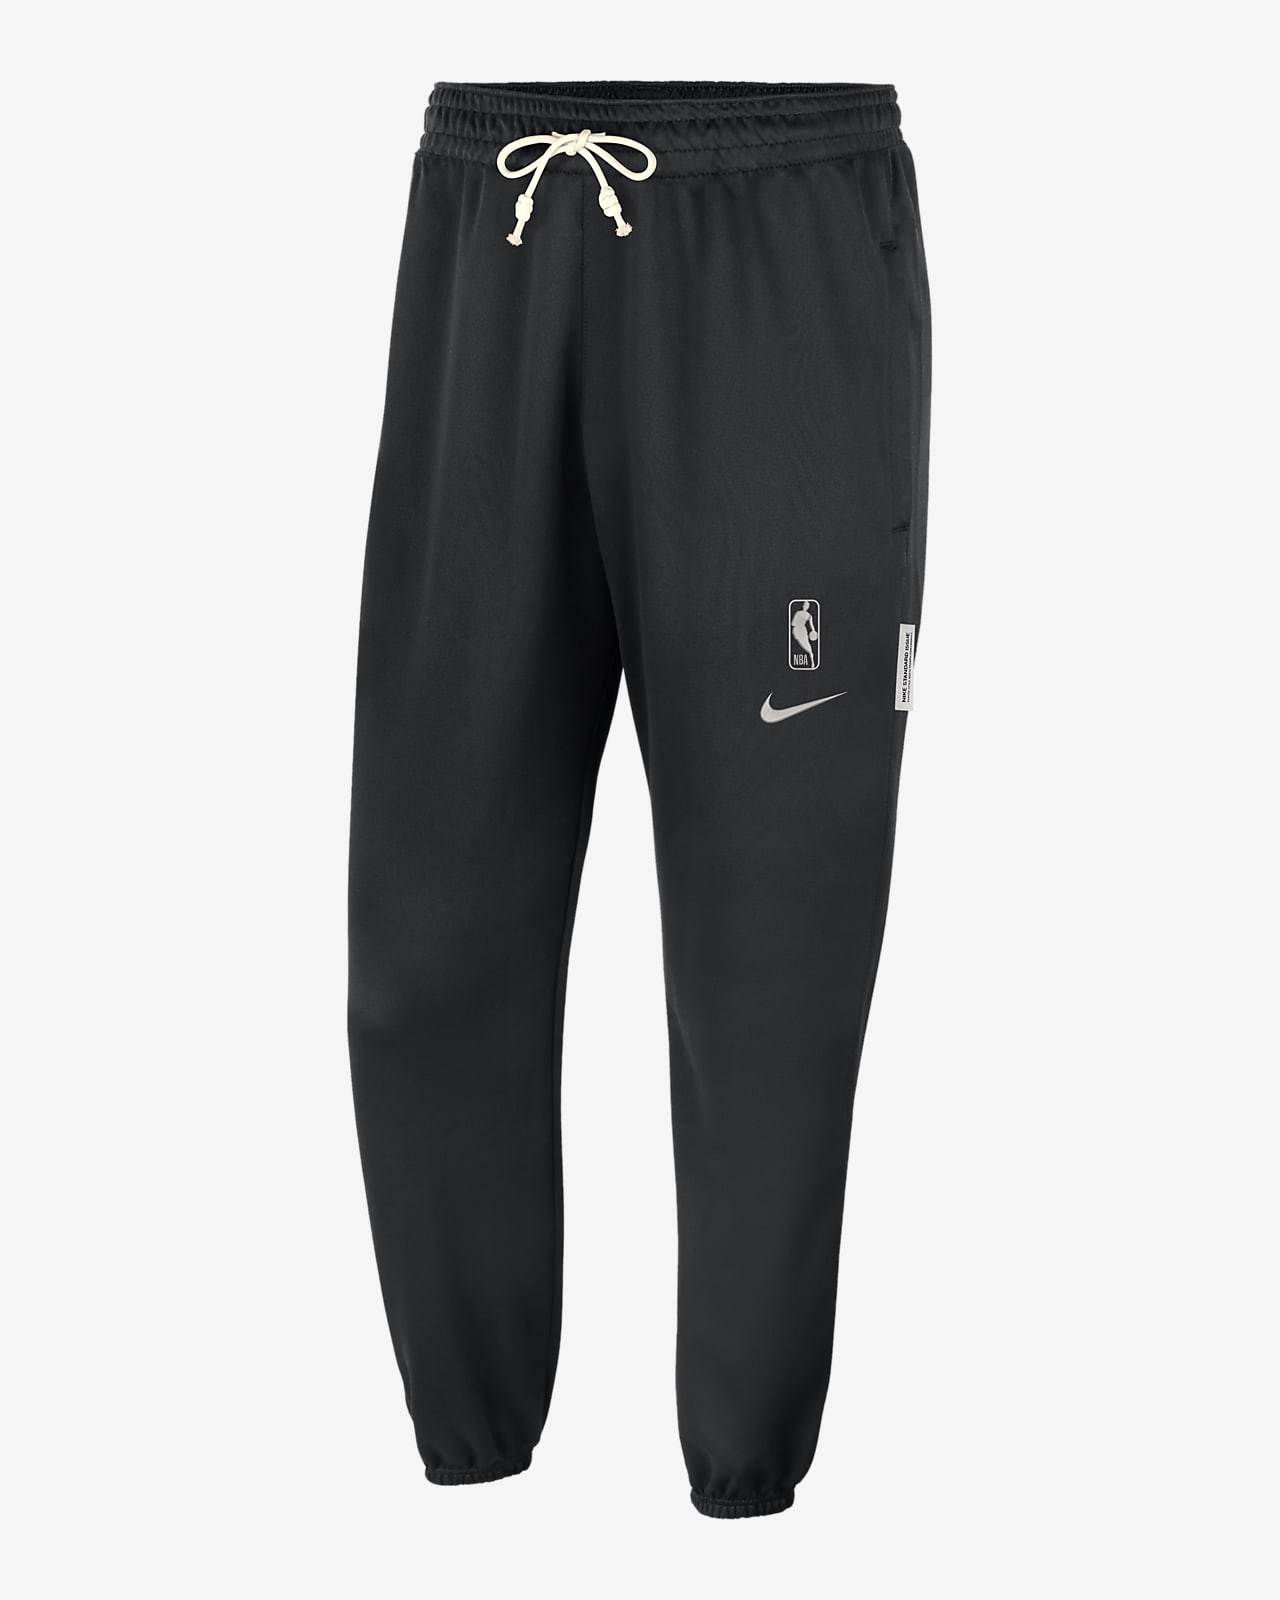 Team 31 Standard Issue Nike Dri-FIT-NBA-bukser til mænd